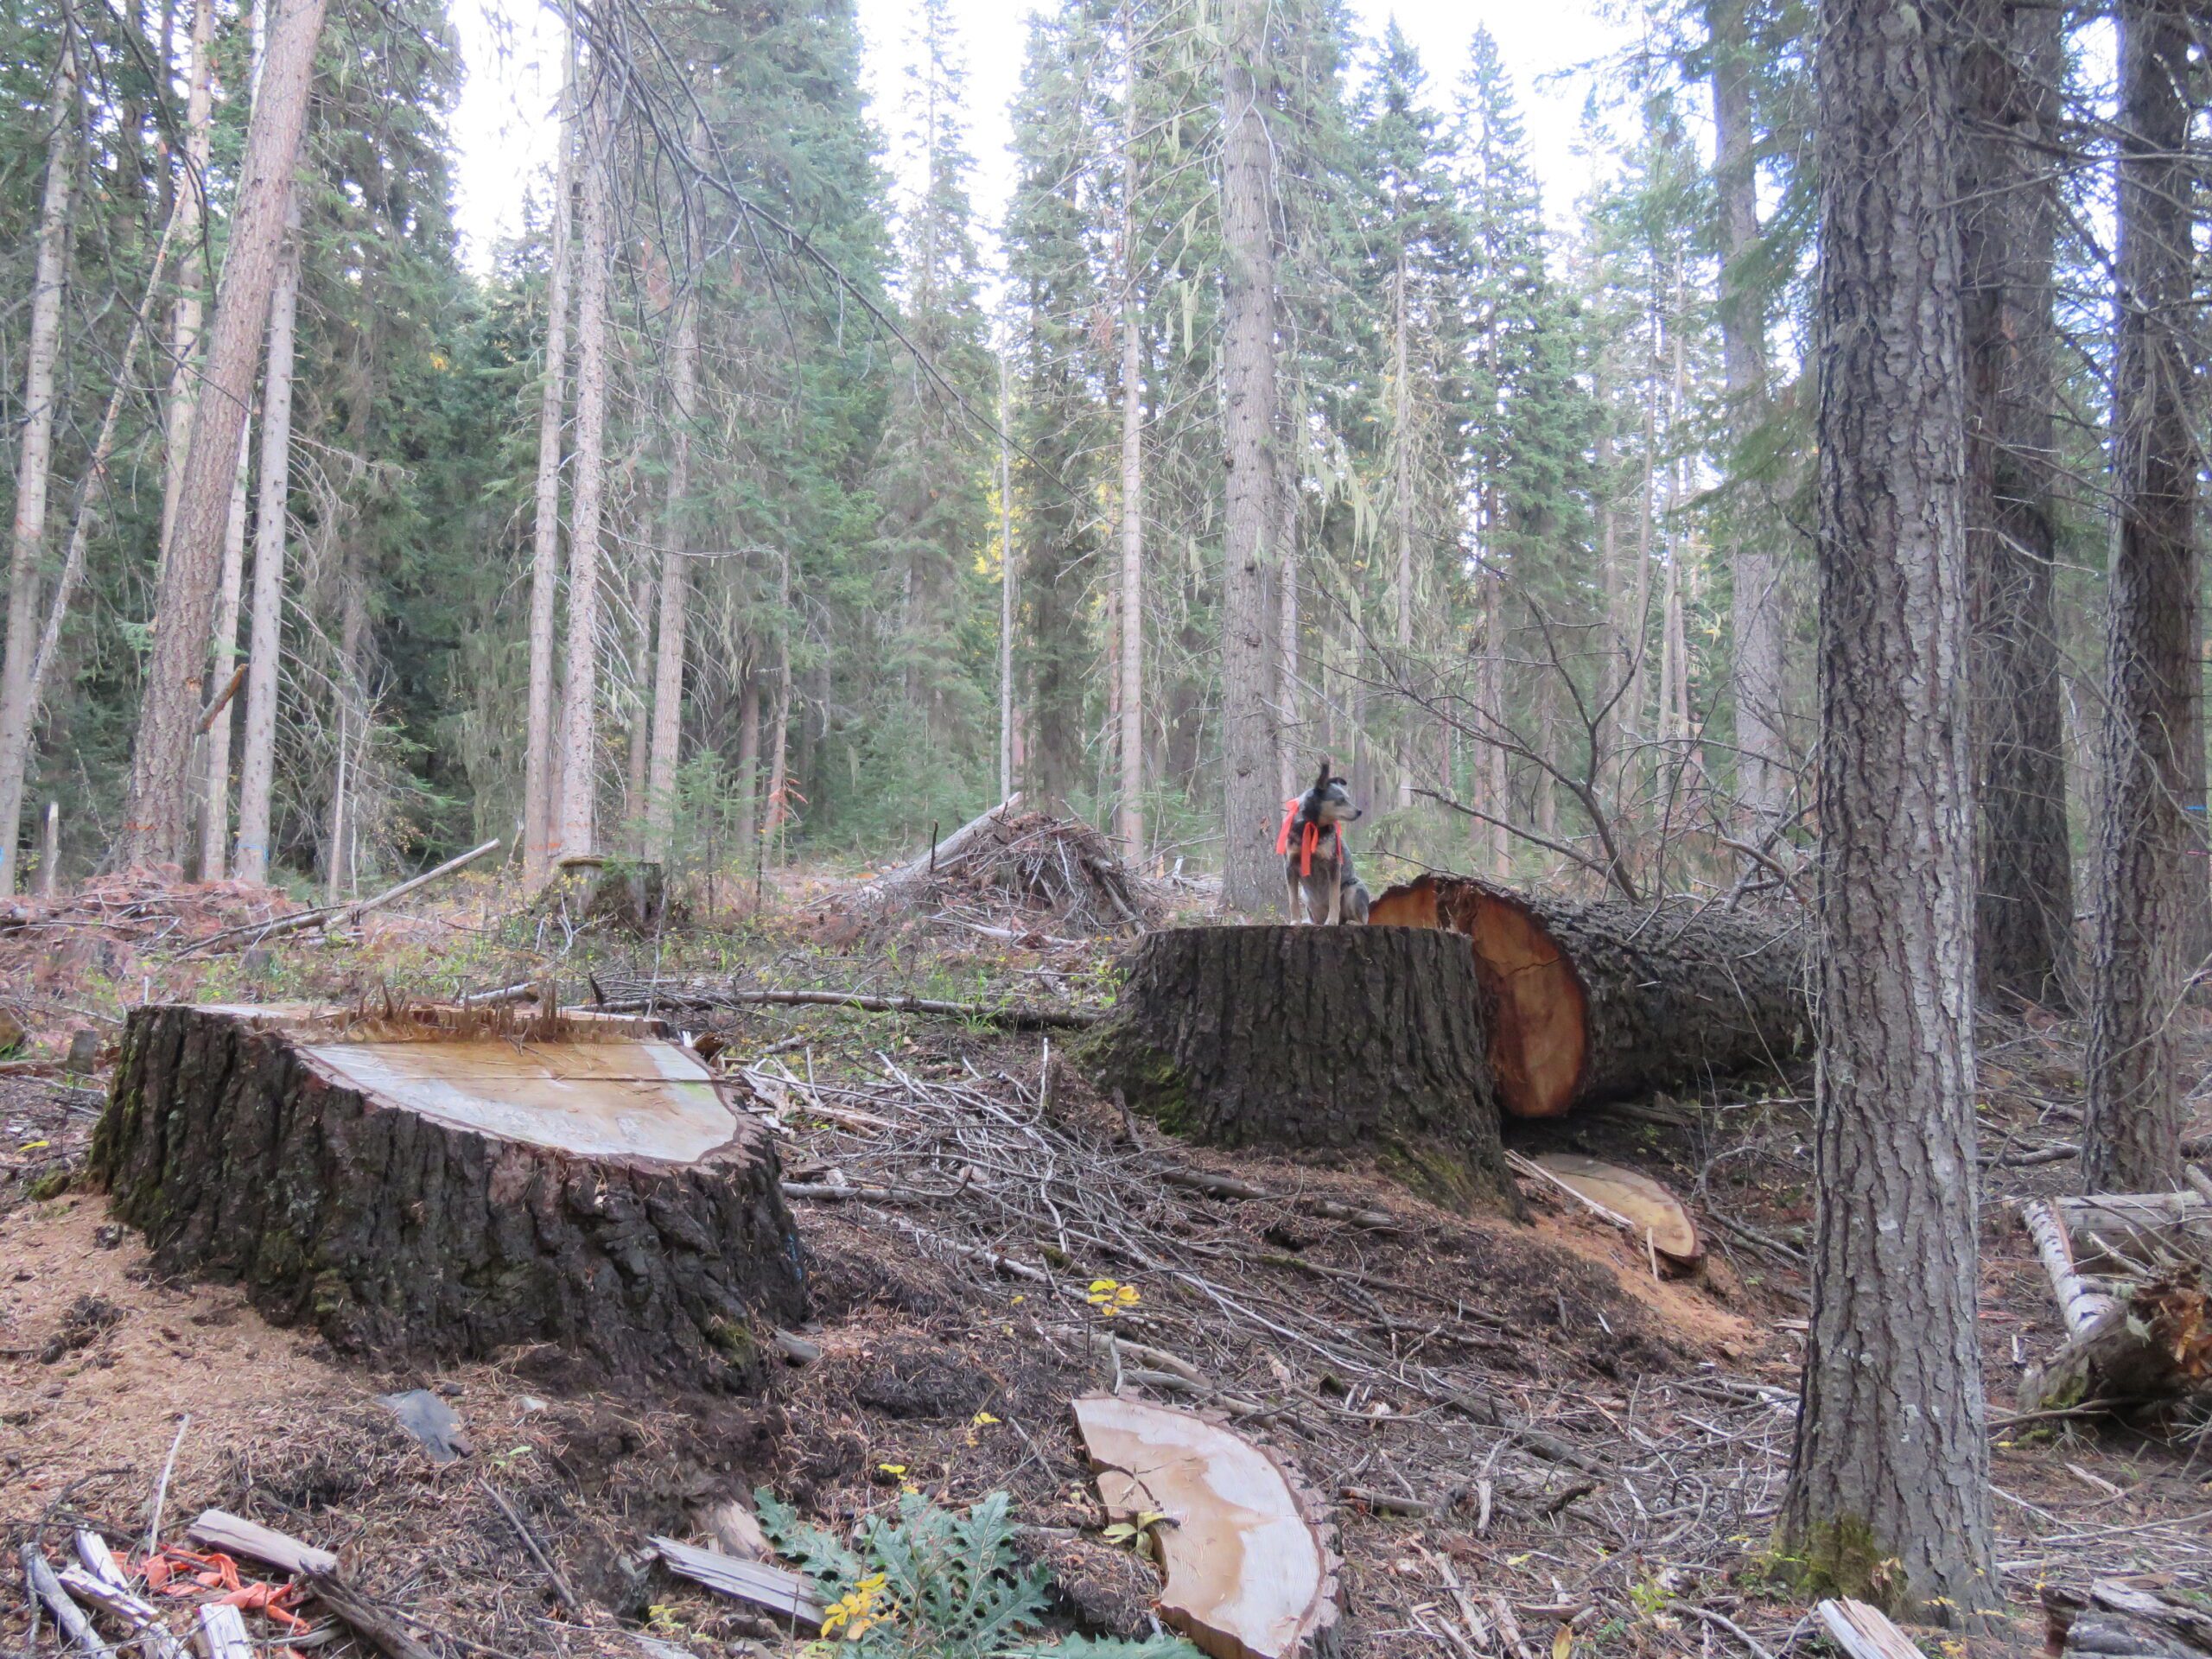 Logging in the Lostine Wild & Scenic River Corridor